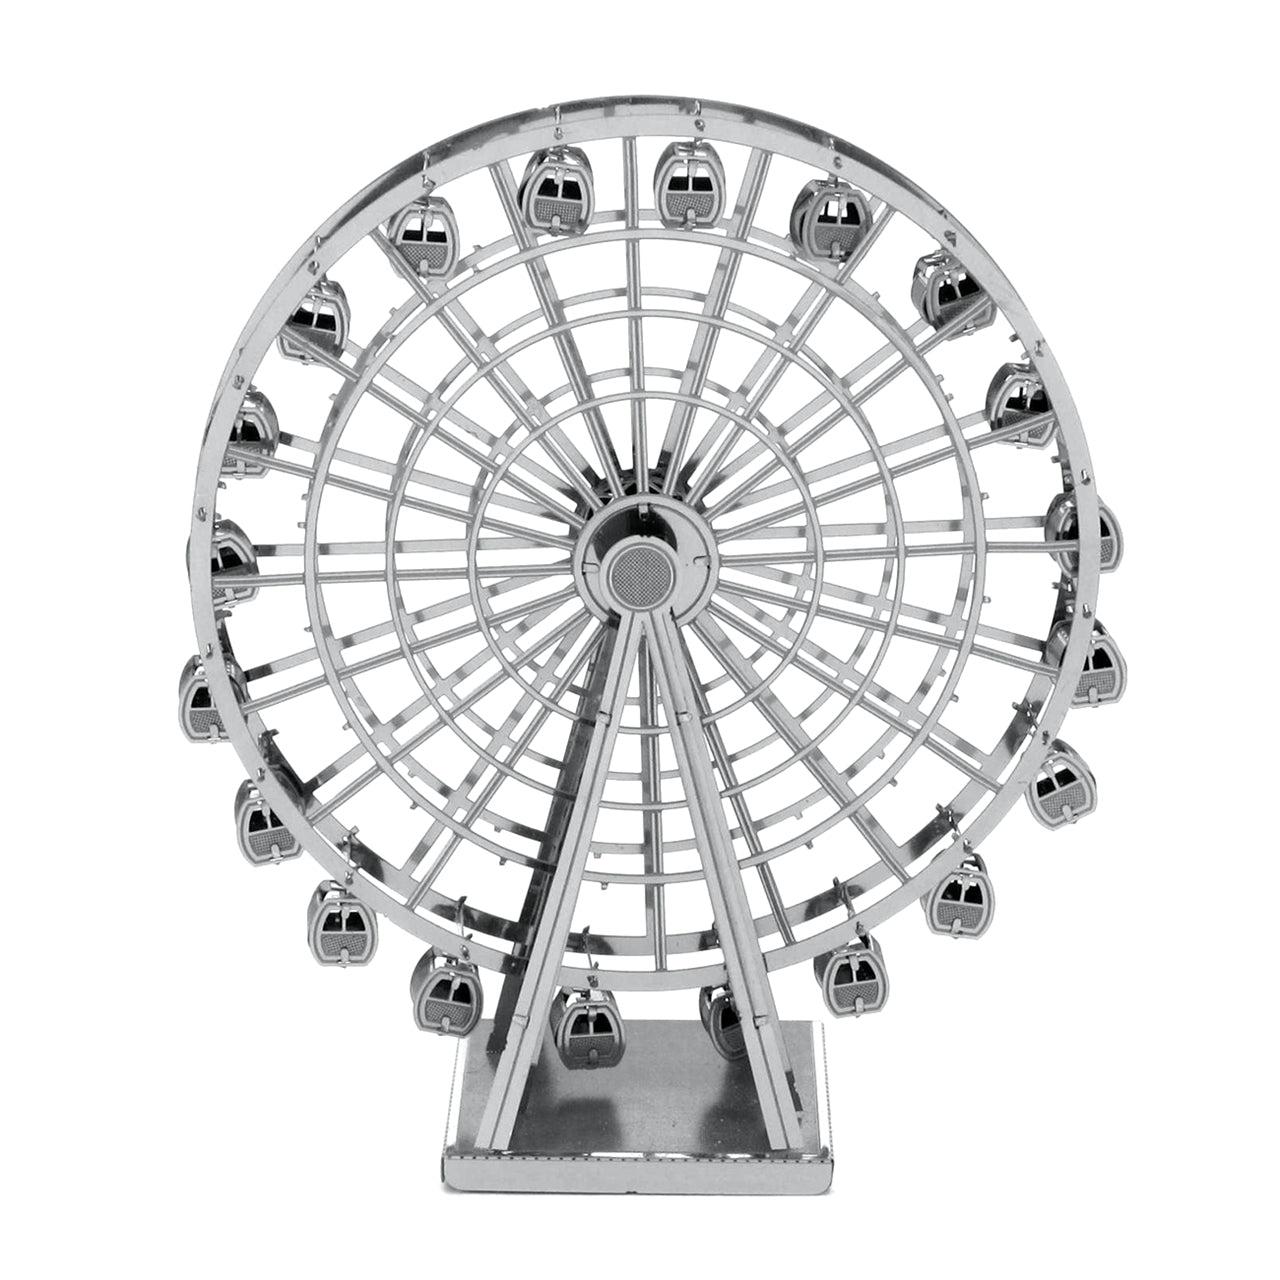 Ferris Wheel 3D Steel Model Kit Metal Earth